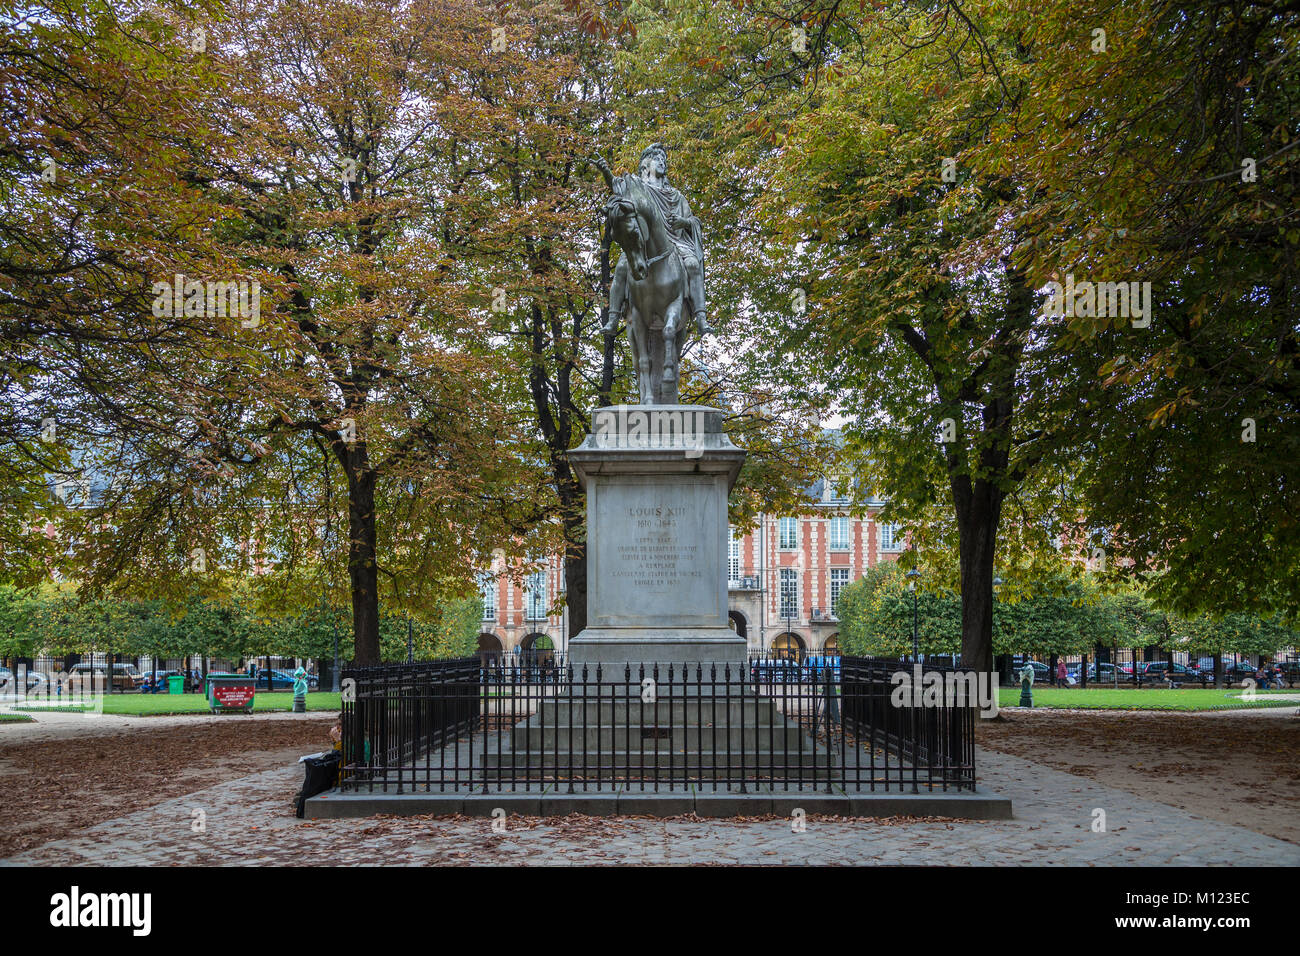 Equestrian statue of King Louis XIII,Place des Vosges,Paris,France Stock Photo